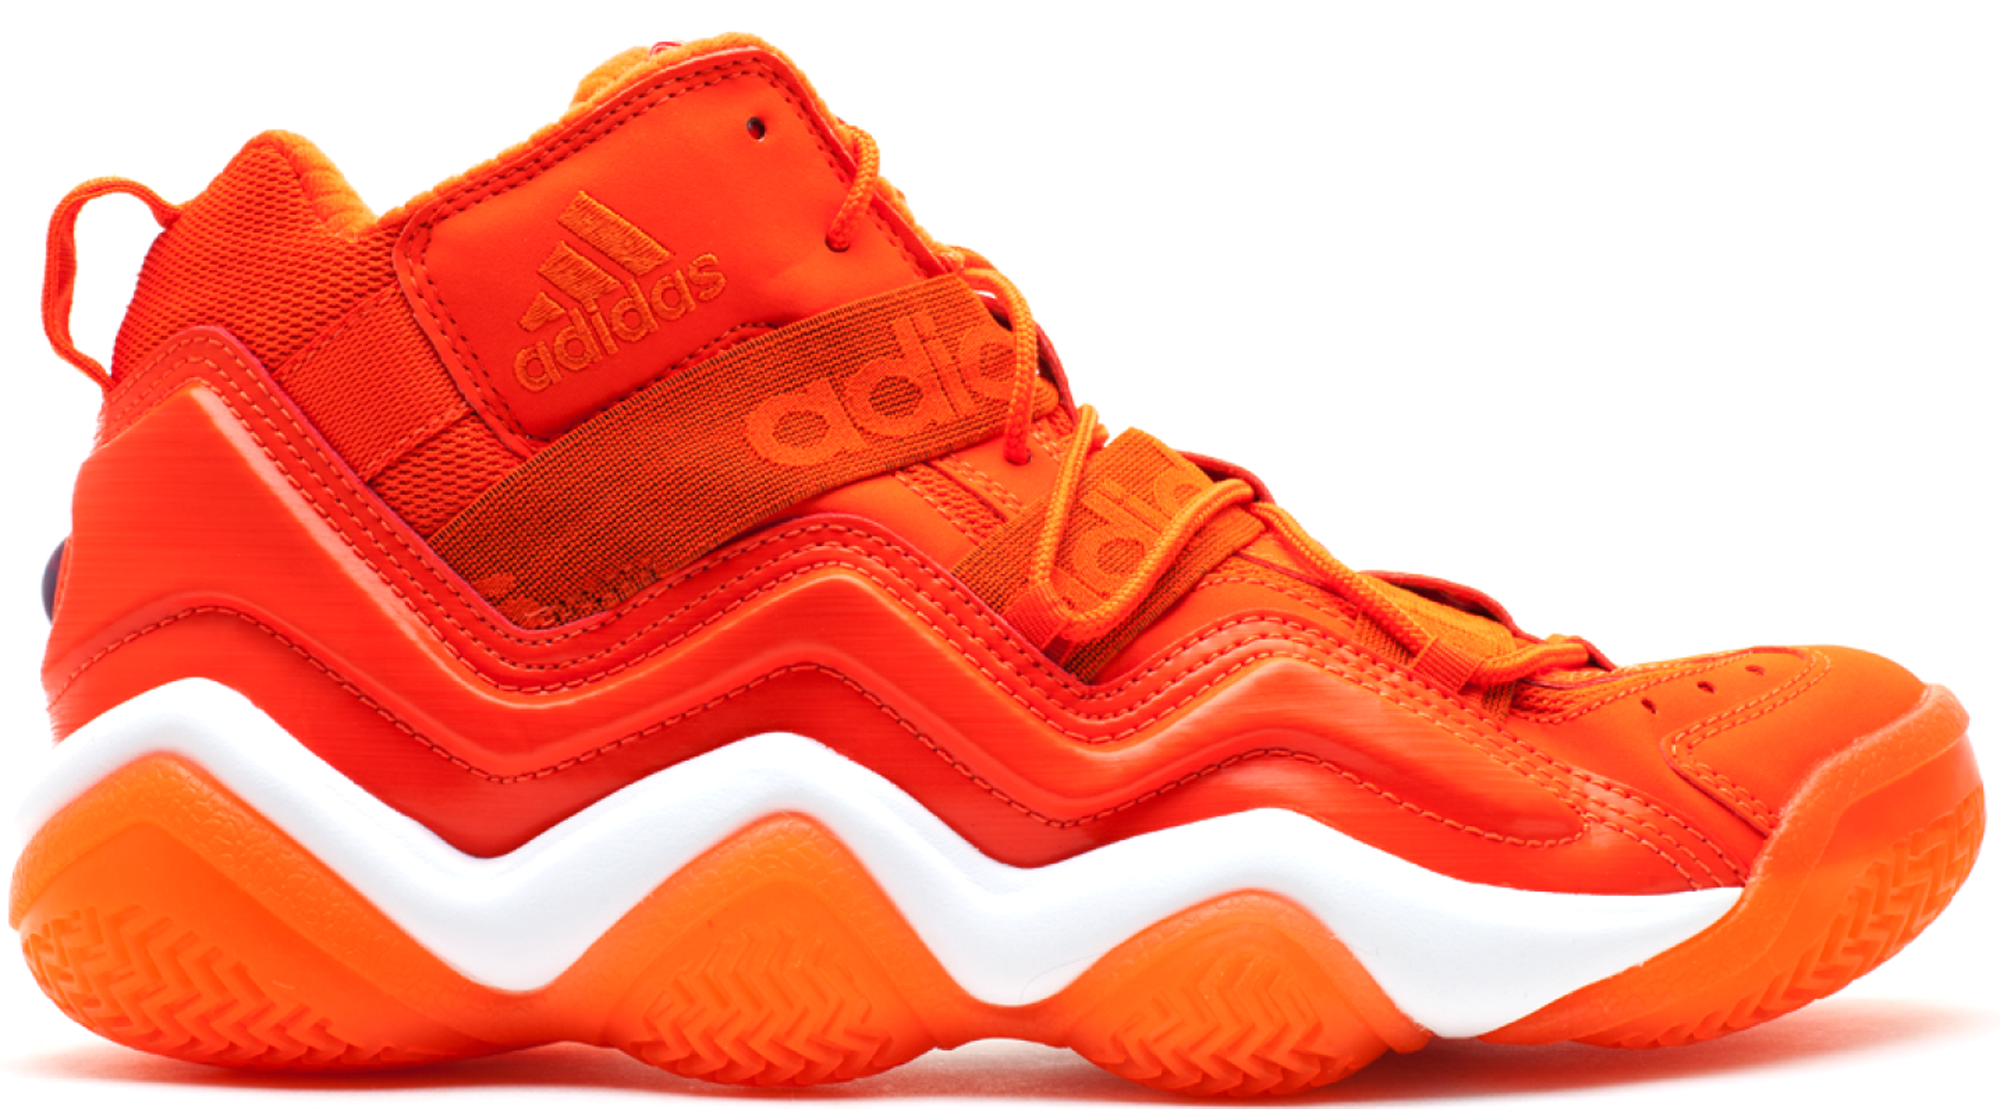 adidas top ten 2000 basketball shoes